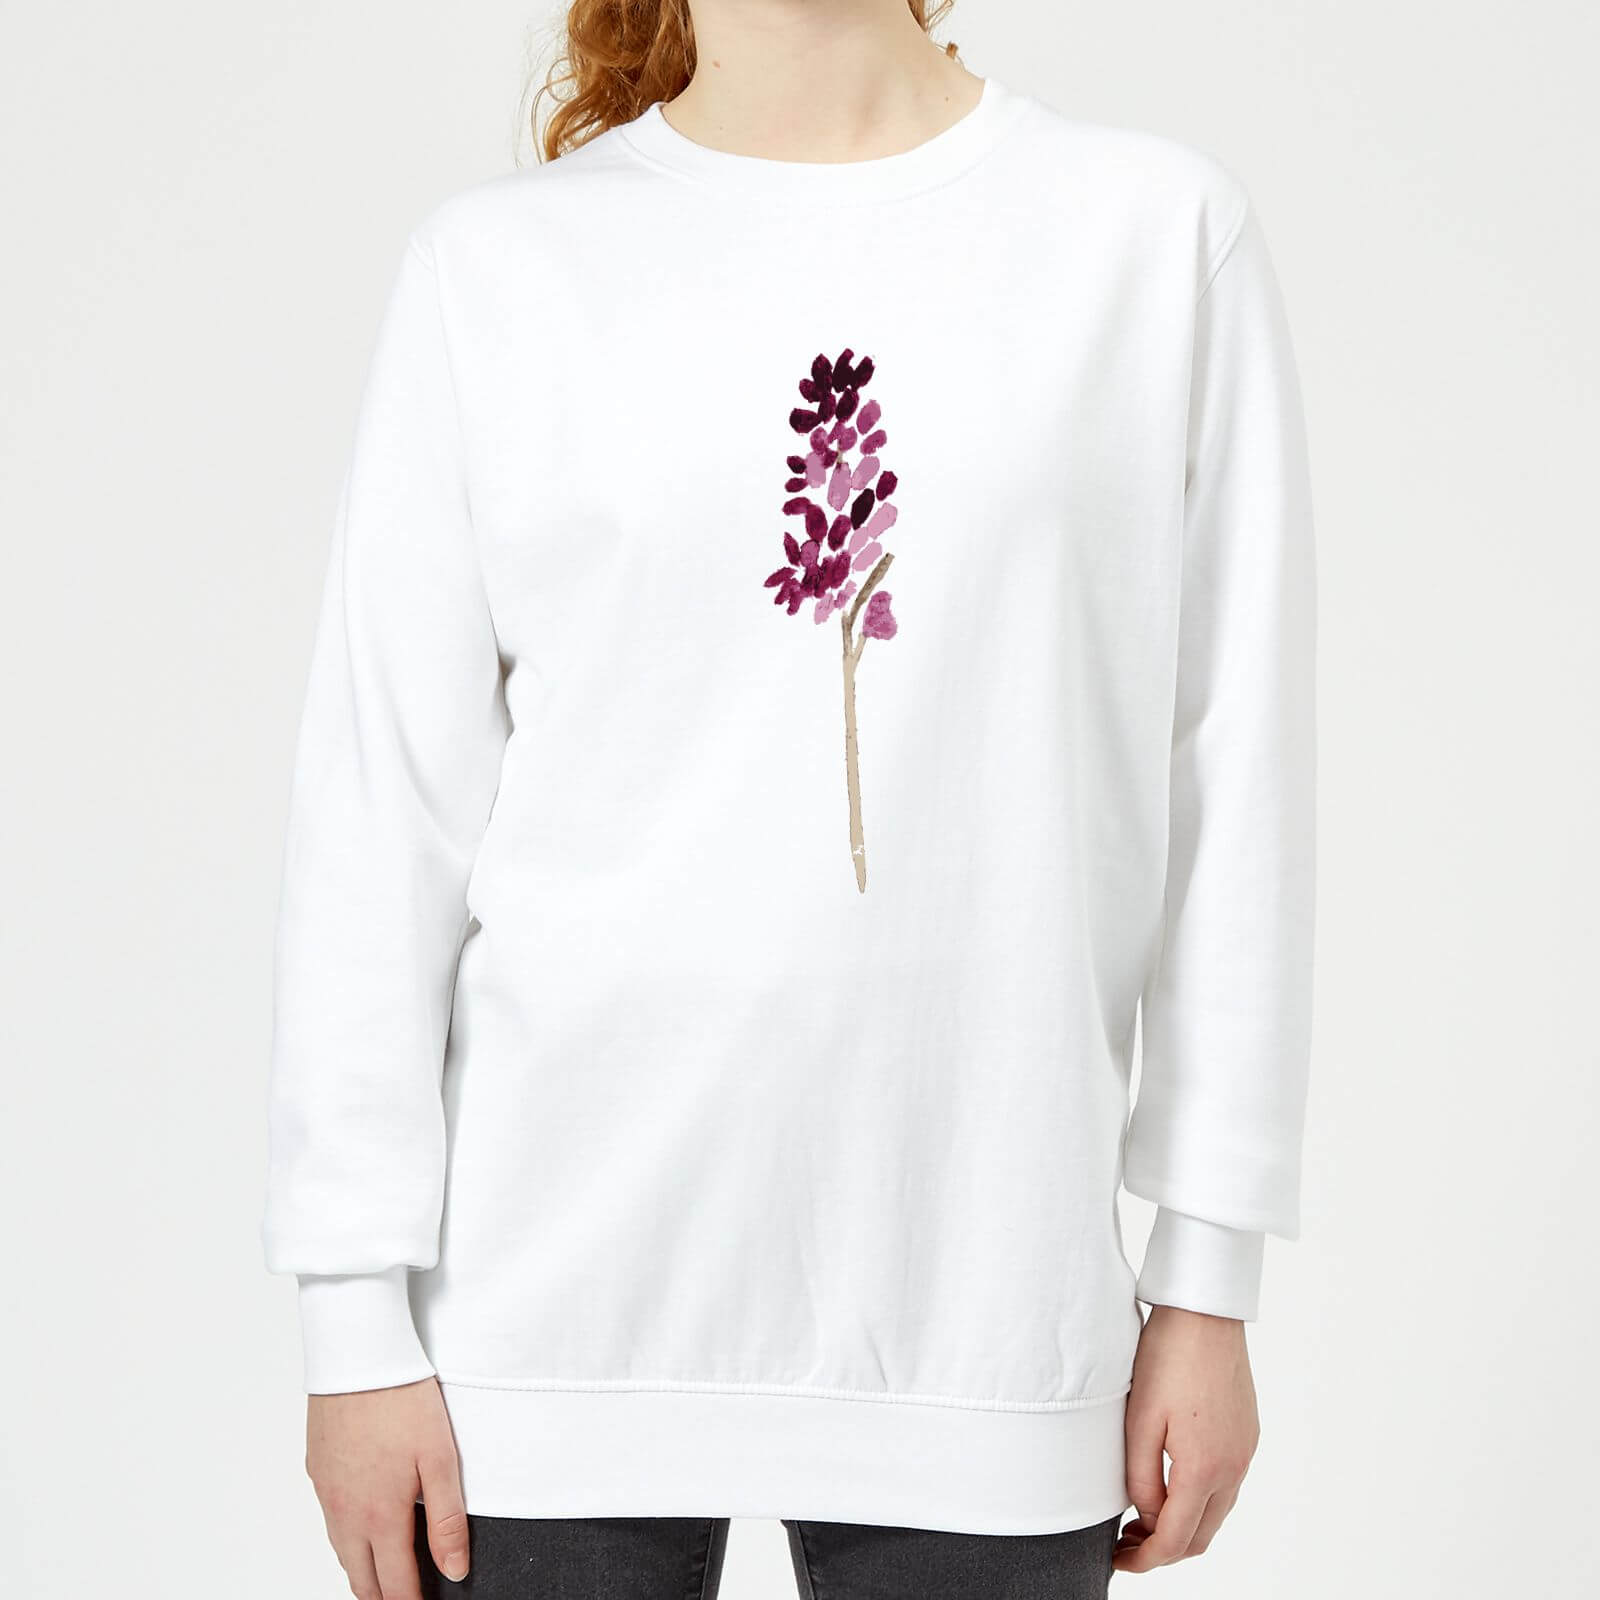 Hyacinth Purple Flower Women's Sweatshirt - White - XS - White